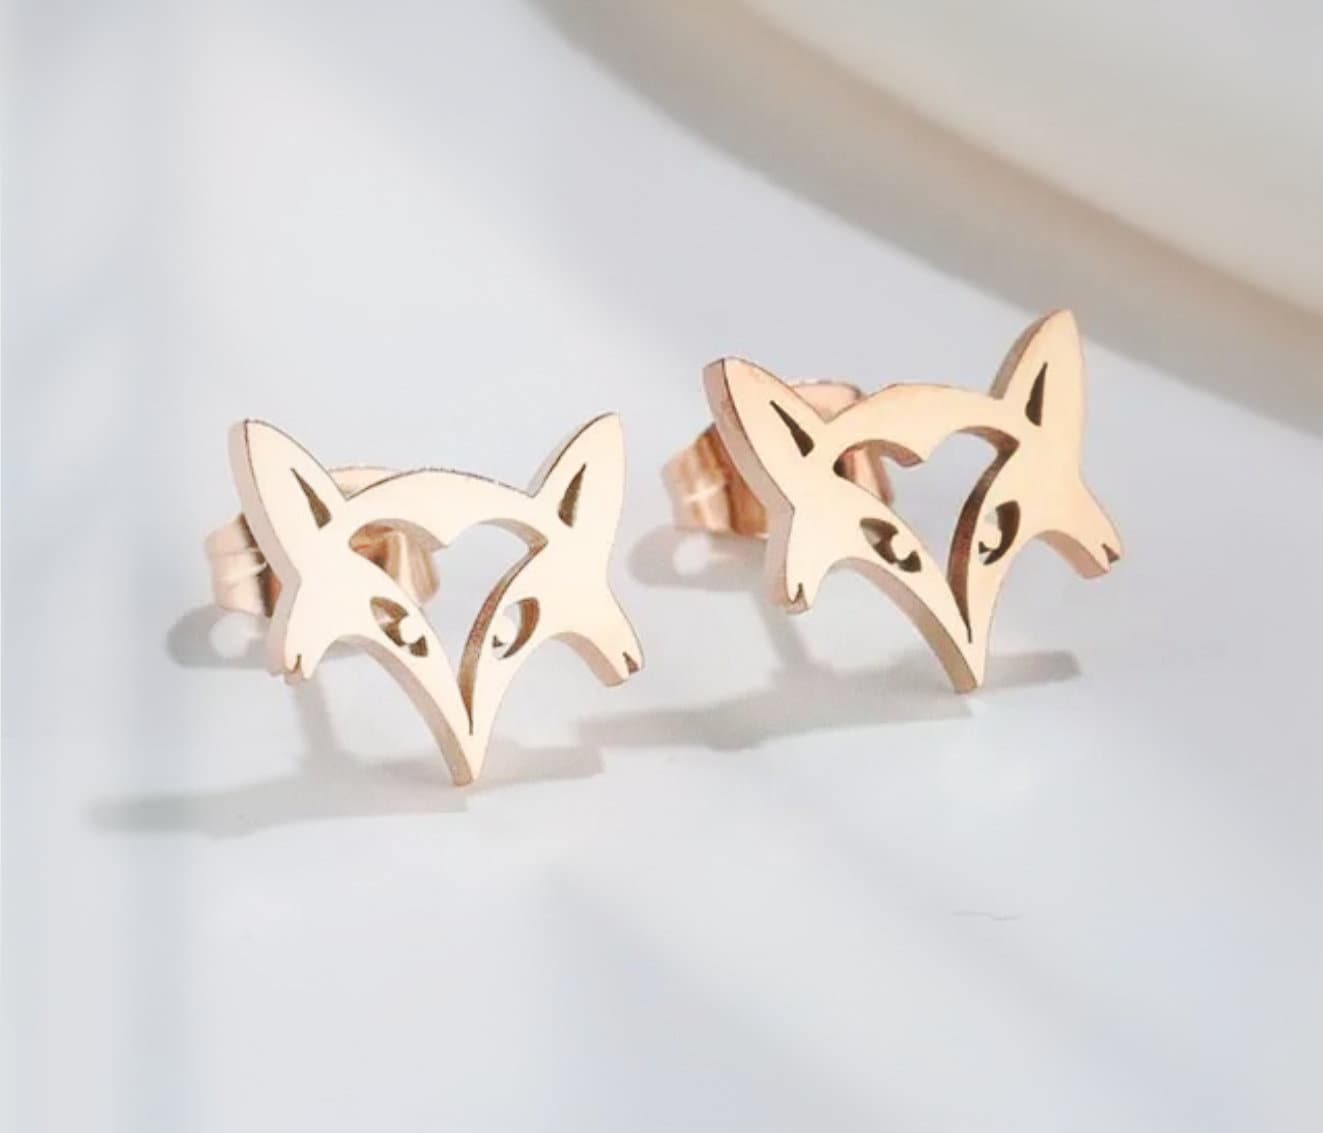 Stainless Steel Hotwife Vixen Earrings